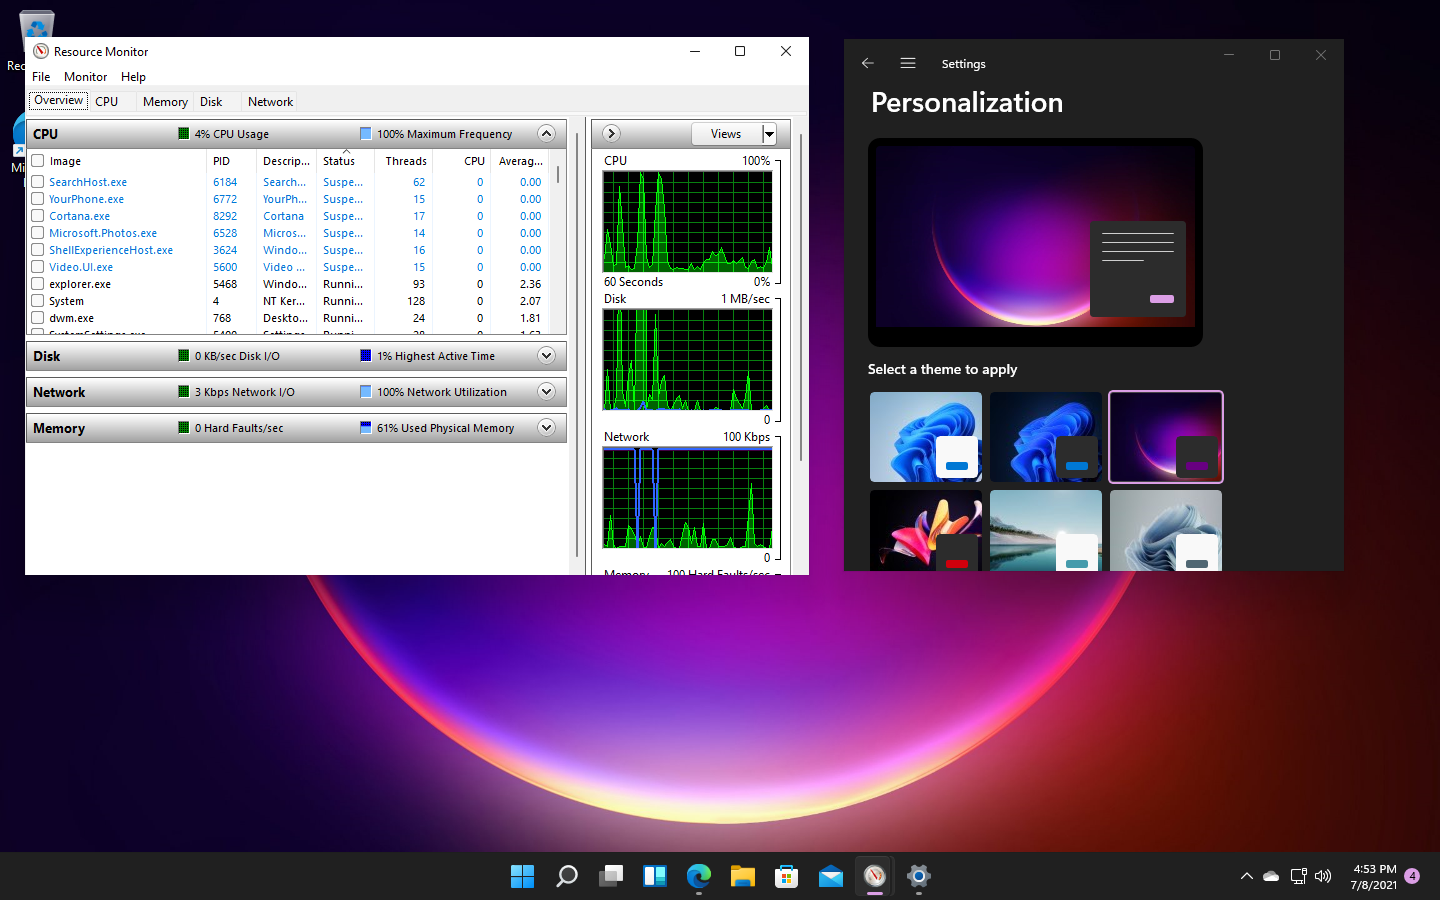 Windows11 Windows 11